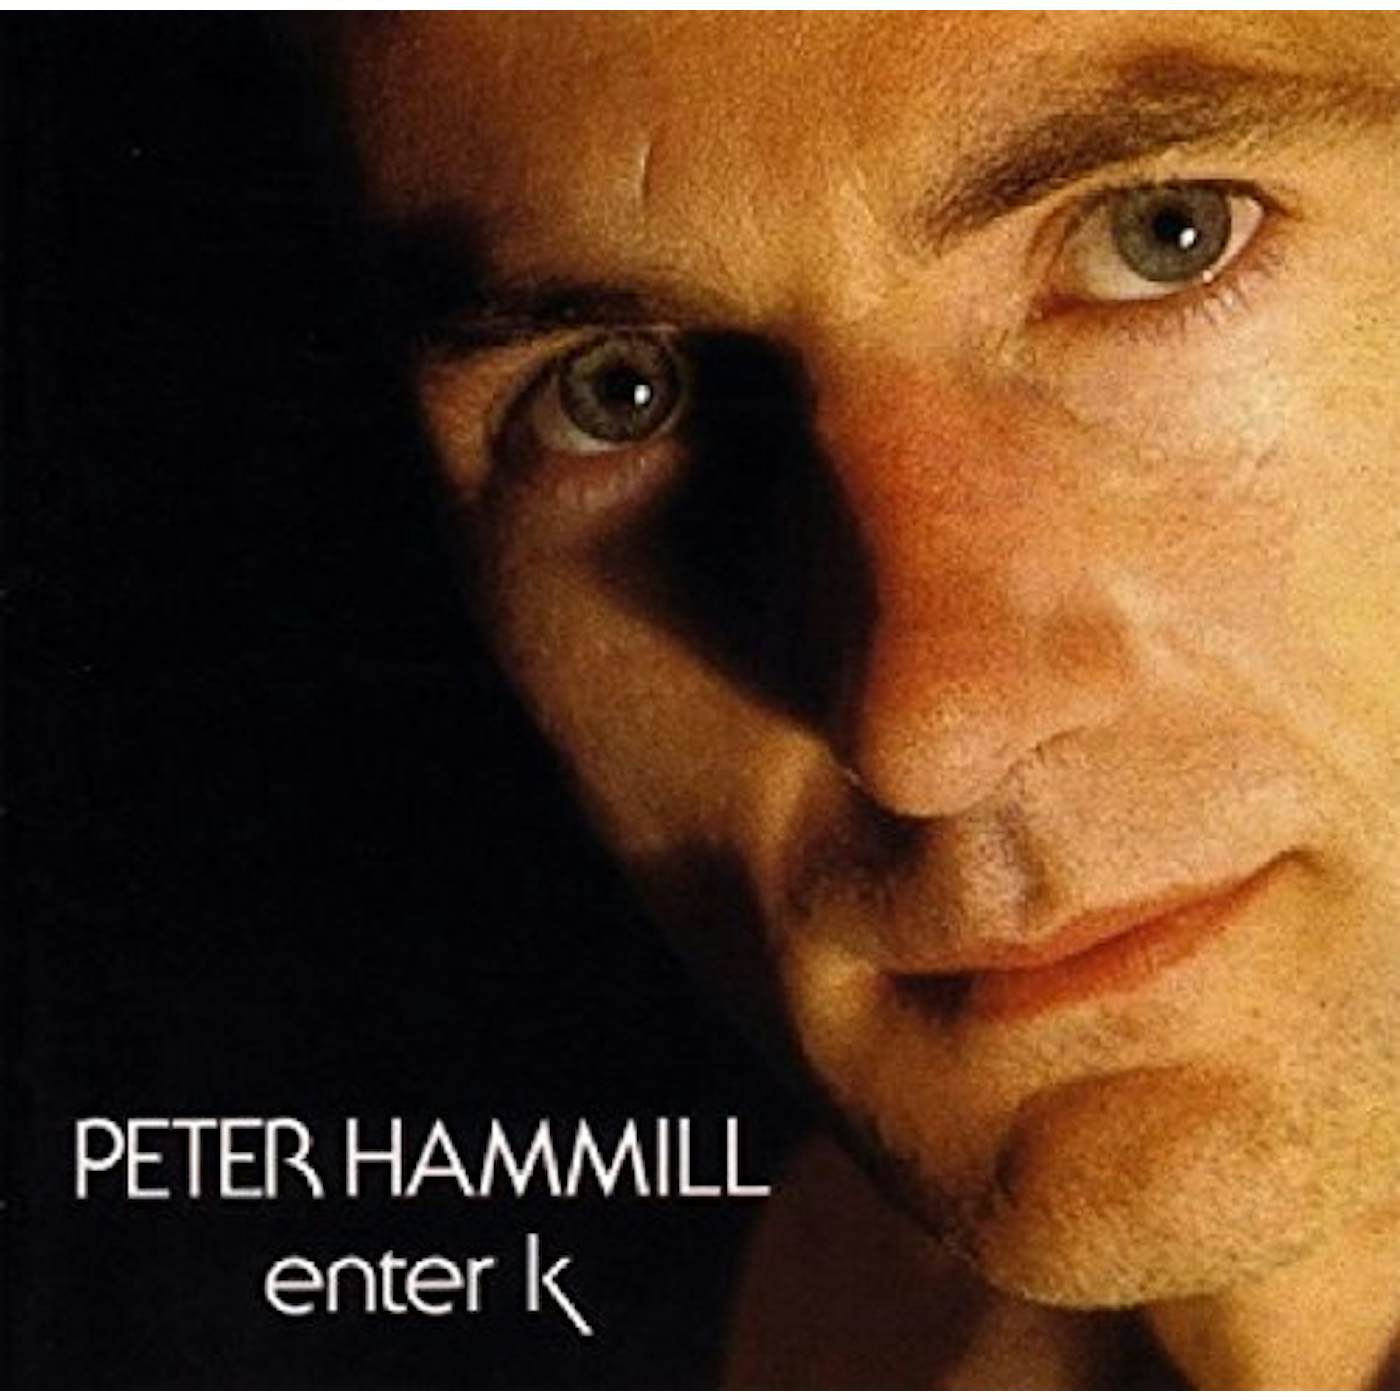 Peter Hammill Enter k Vinyl Record